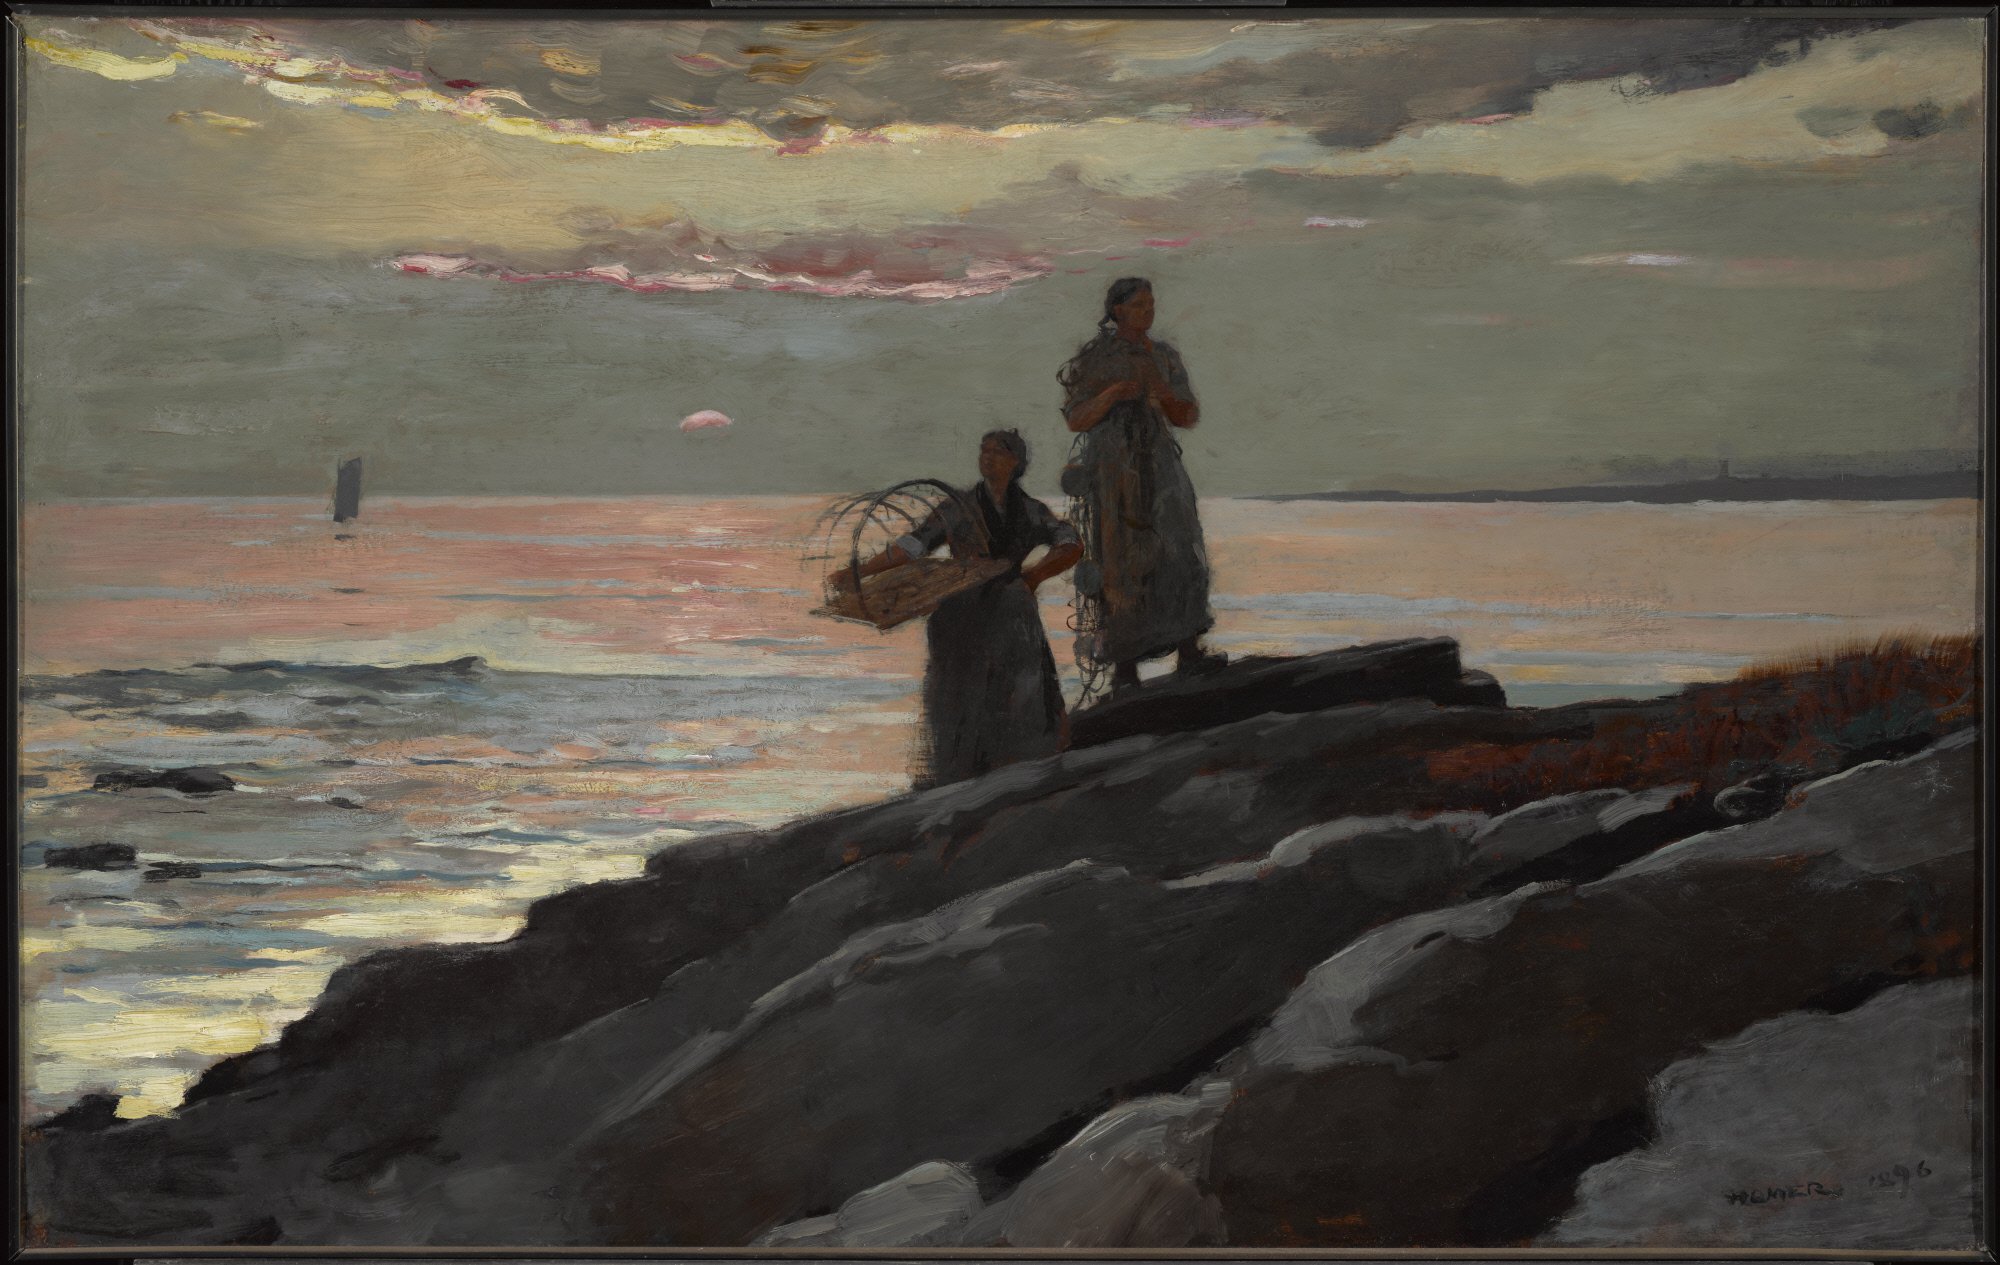 Ηλιοβασίλεμα, κόλπος Σάκο by Winslow Homer - 1896 - 60,5 x 96,4 εκ. 